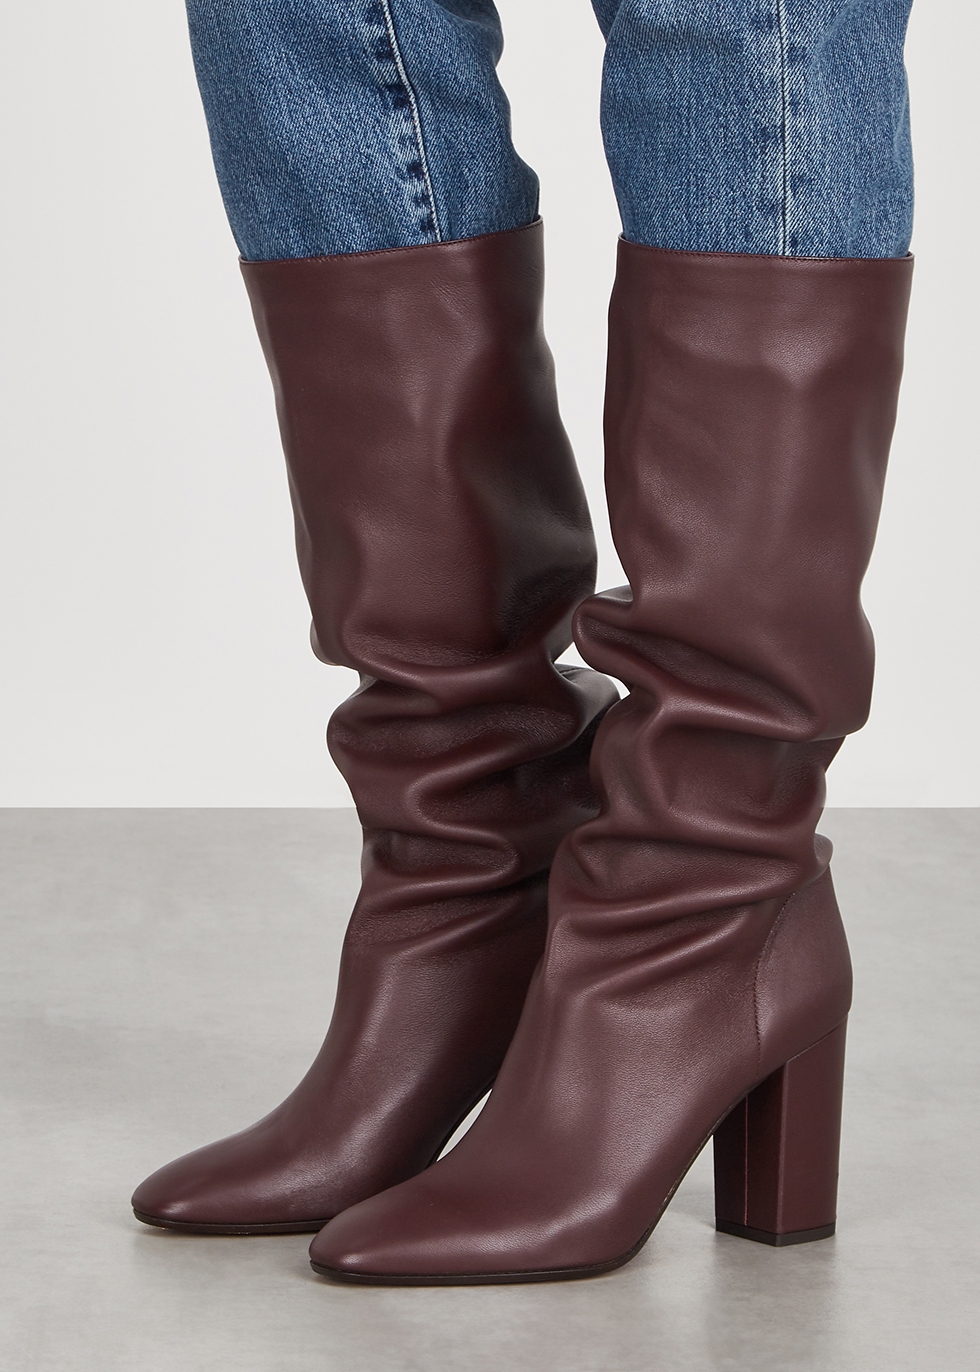 maroon knee high boots